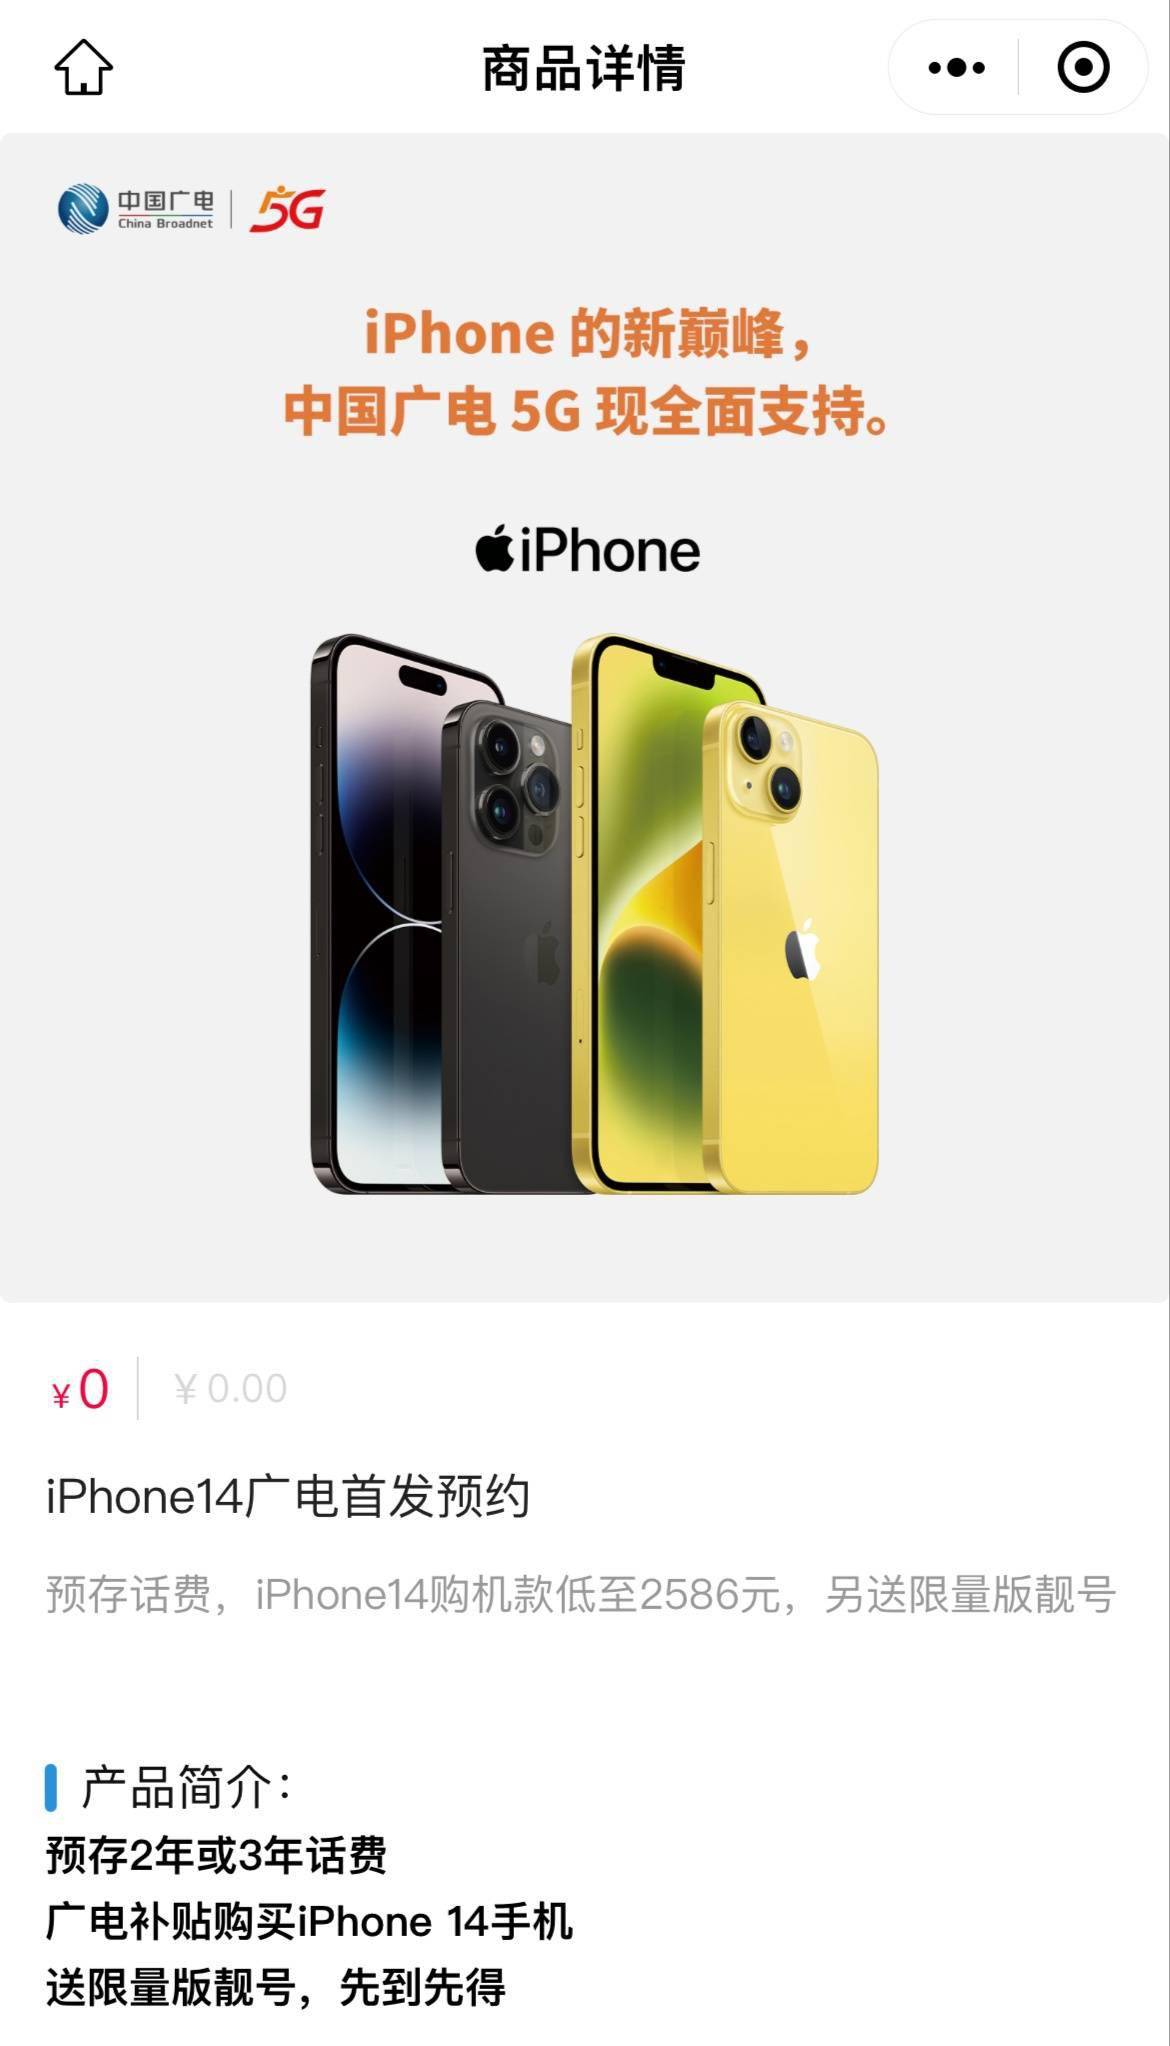 手机套餐:中国广电iPhone 14系列手机合约套餐开启预约，购机最低仅2586元